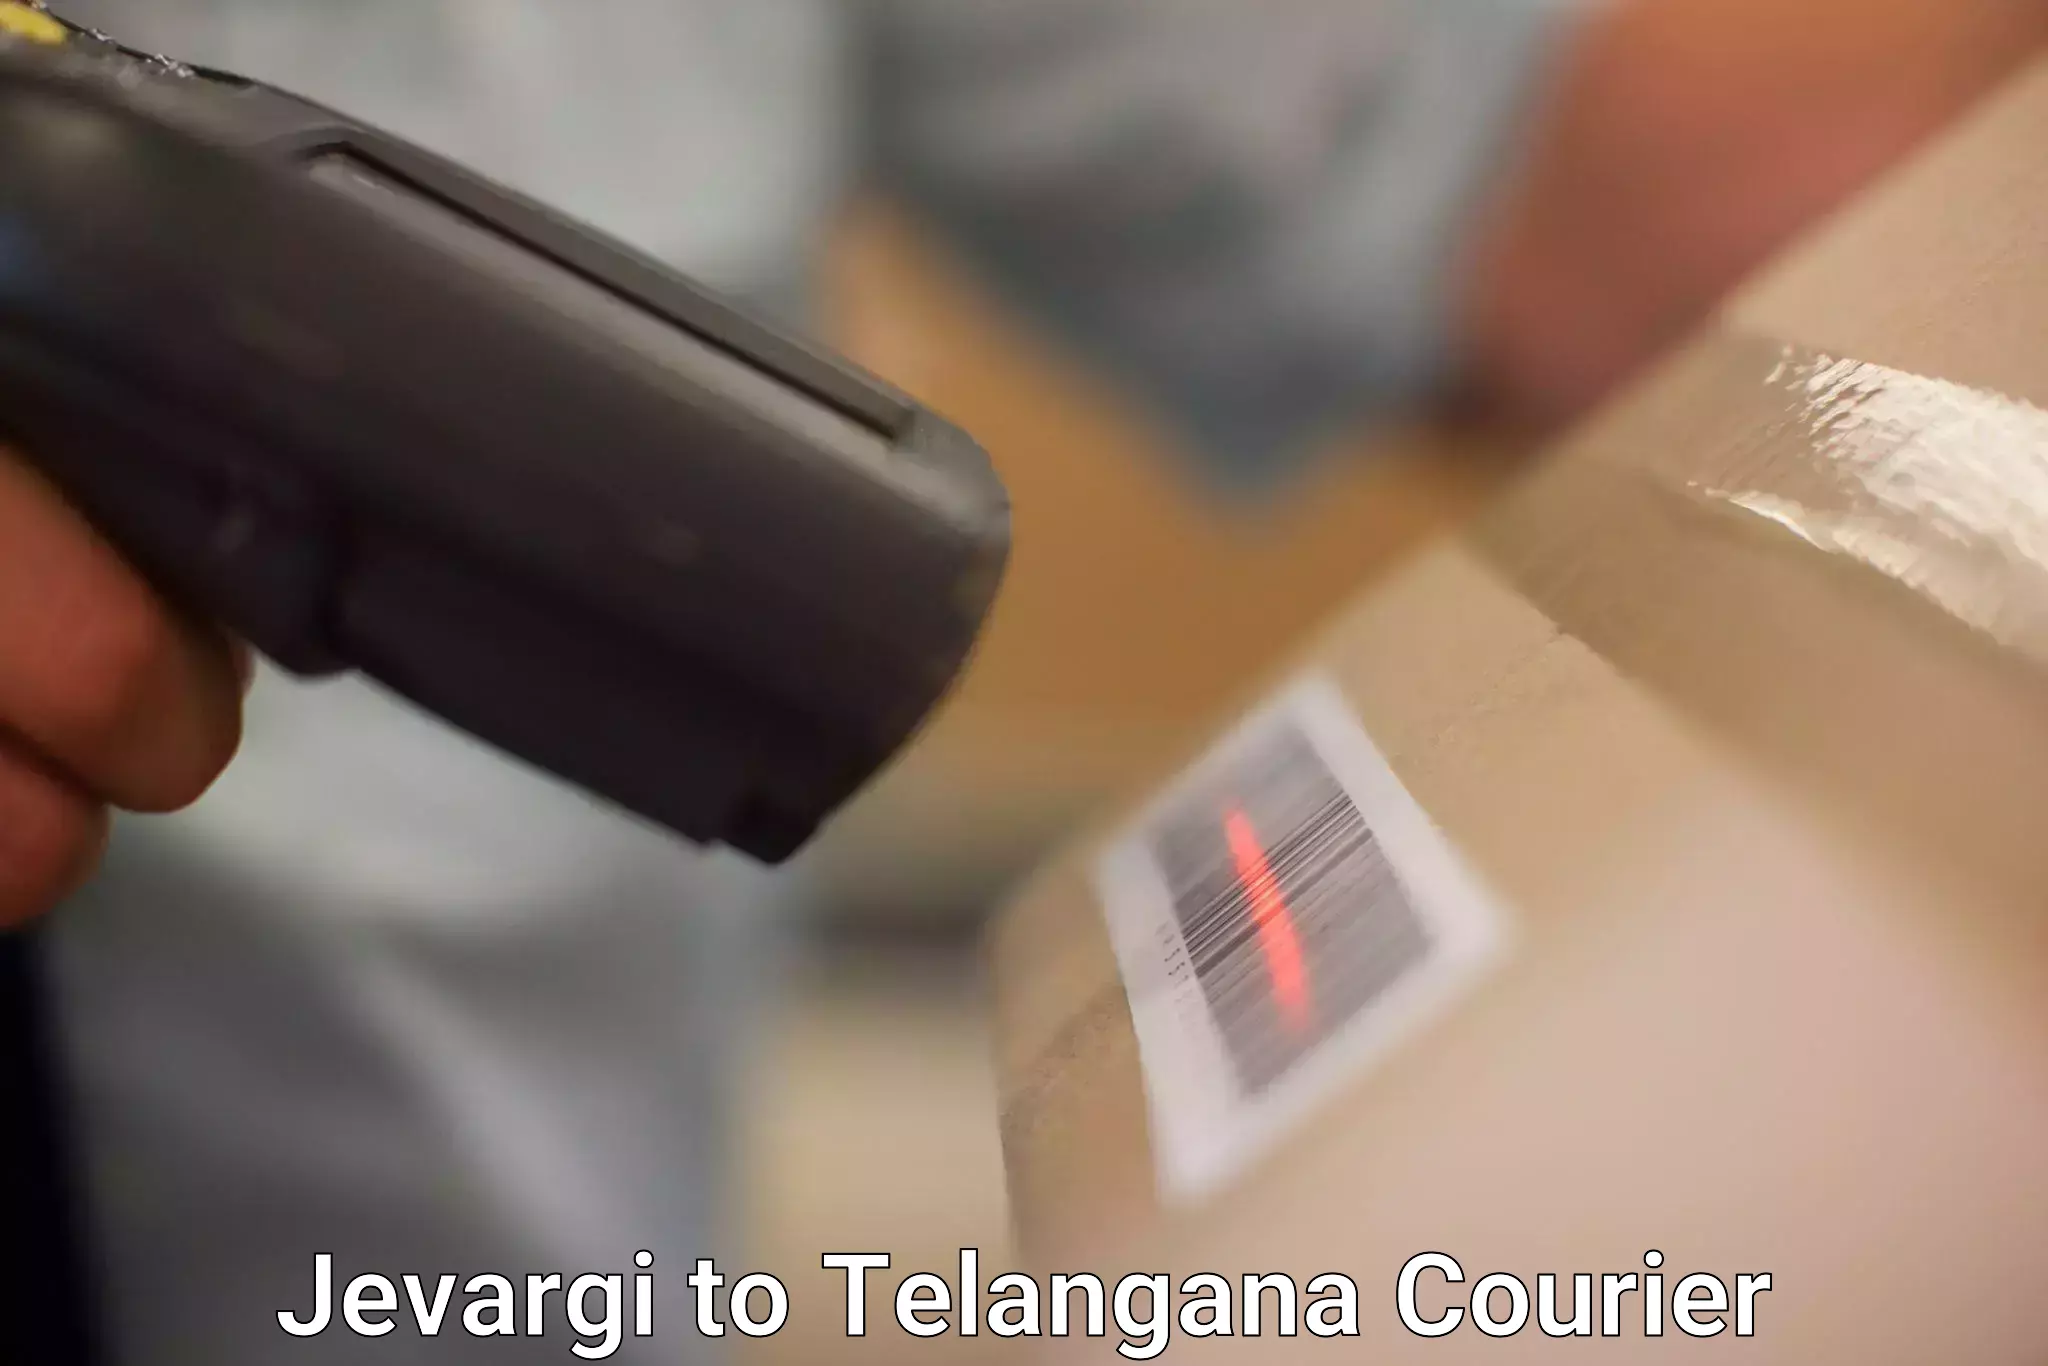 Bulk courier orders in Jevargi to Telangana